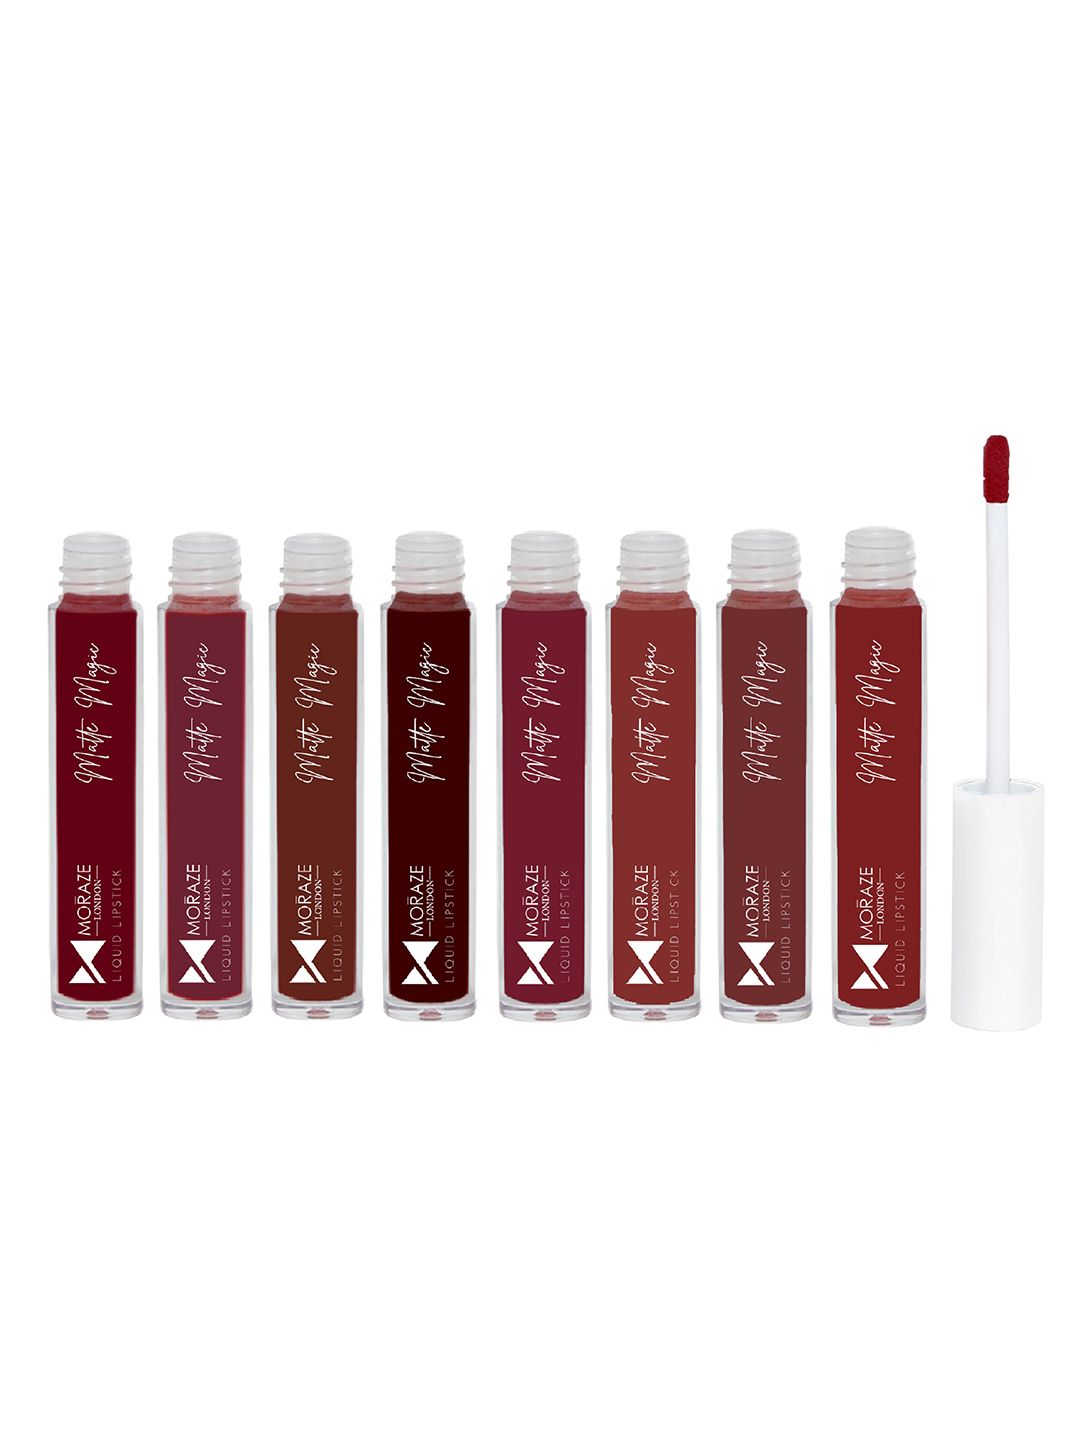 Moraze Set Of 8 Matte Magic Liquid Lipsticks Price in India